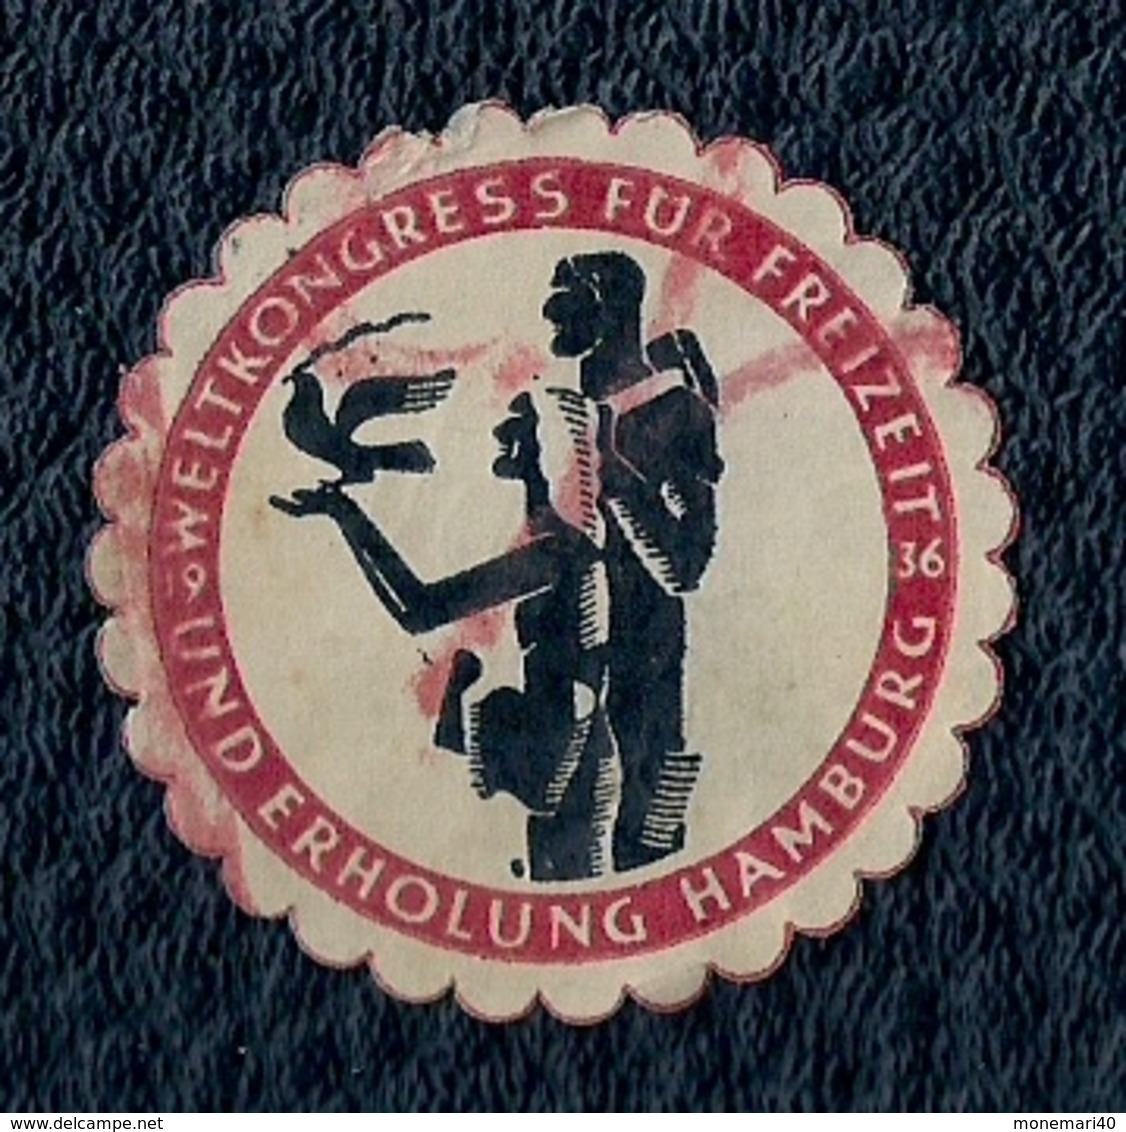 ALLEMAGNE - VIGNETTE - UND ERHOLUNG HAMBURG - WELTKONGRESS FUR FREITZEIT 1936. - Hambourg